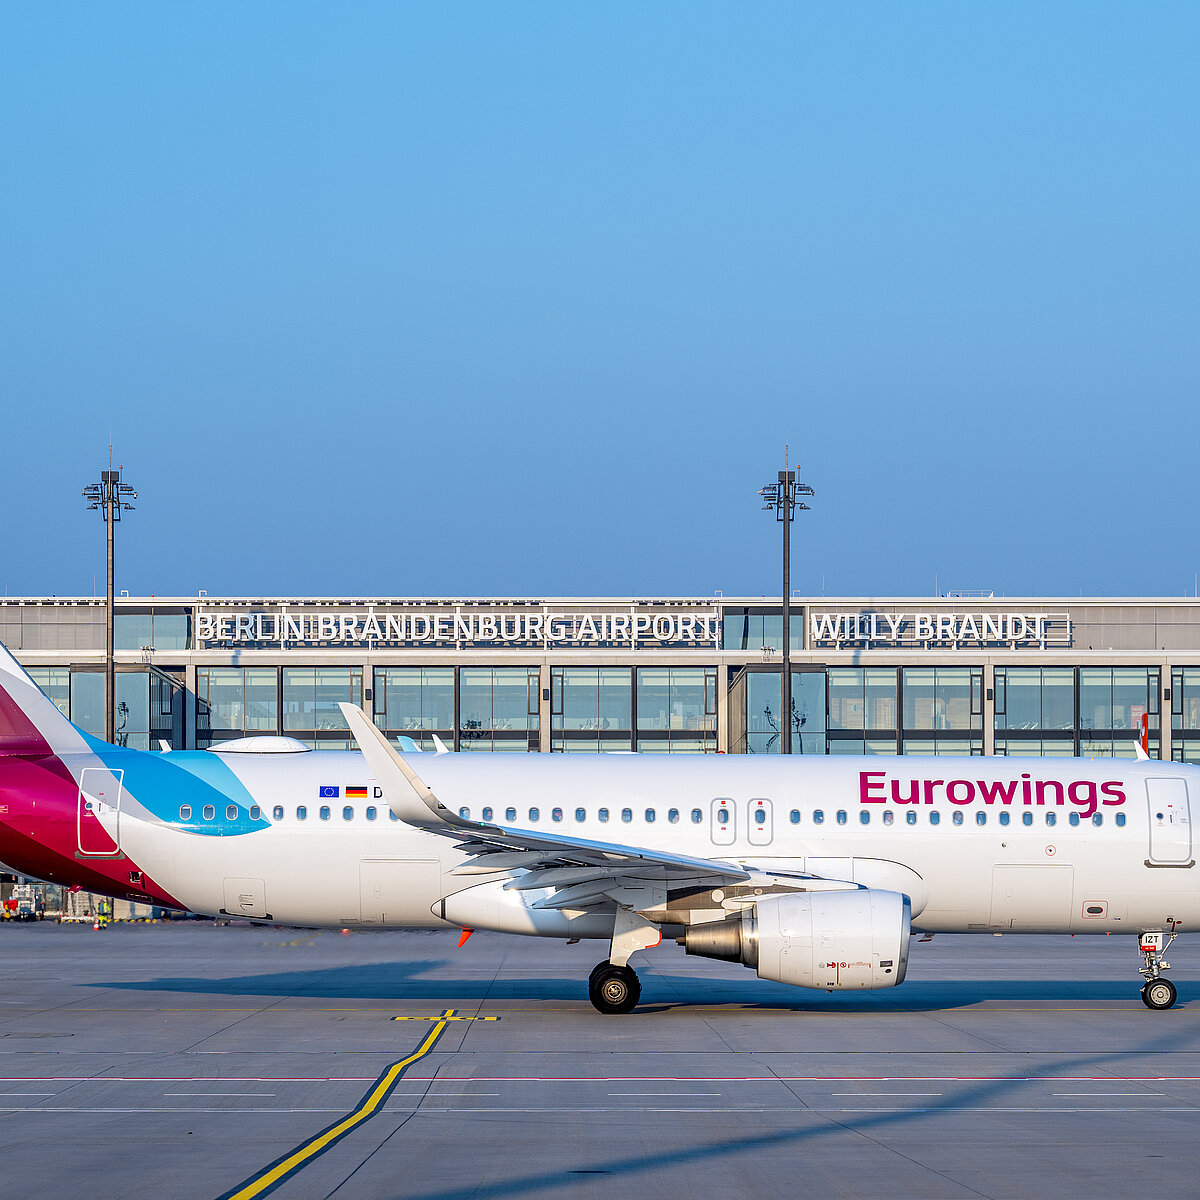 Flugzeug Eurowings vor BER Flughafen